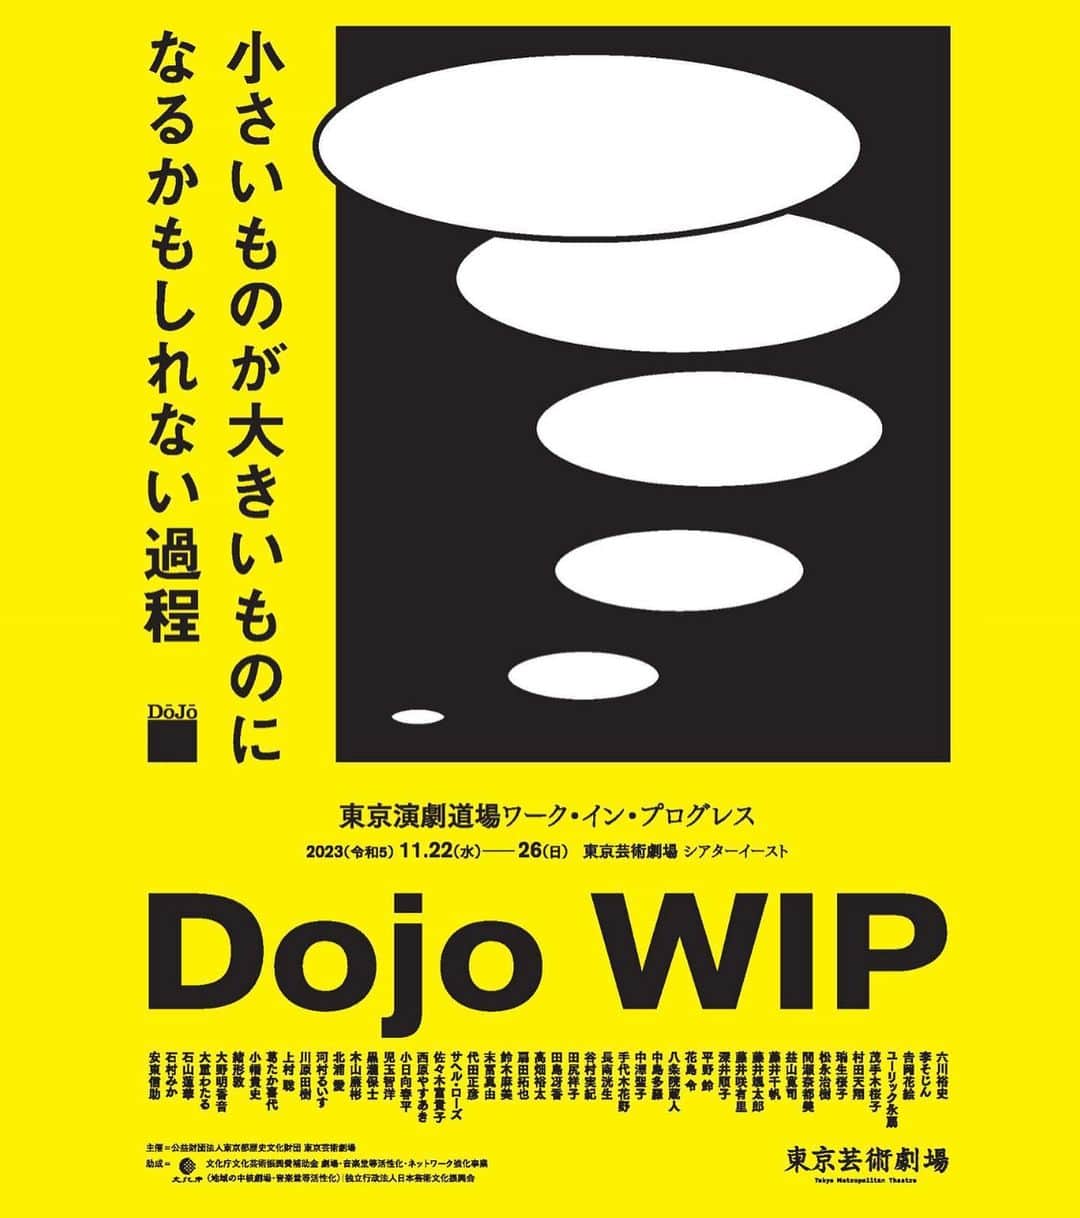 高畑裕太さんのインスタグラム写真 - (高畑裕太Instagram)「【作・演出・出演情報】  この度、所属している 東京演劇道場の企画公演  『ワーク・イン・プログレス Dojo WIP』 日程：11/22(水)~26(日) 会場：東京芸術劇場シアターイースト  に参加する事になりました。  当公演は8つのプログラムで構成されています。 私が参加作品するのは、 大野明香音・高畑裕太企画の 『アイとトキオ（仮）』です。  また先日、上演台本が完成して 正式タイトルが 『忘郷少女』 となりました。  今回の『ワーク・イン・プログレス Dojo WIP』は、 東京芸術劇場の芸術監督・野田秀樹氏が、 「次世代の役者・芝居人のための修行の場」 として立ち上げた「東京演劇道場」というチームによる試作発表の場です。 道場には、NODA・MAPの公演などでも 活躍する俳優や、ダンサーや、 他にもありとあらゆる表現活動を行なっている、 個性と確かな実力に溢れた面々が揃っています。 それぞれが数年に一度開催されるオーディションを経て、参加しました。  在籍メンバーは約100名前後で、今回の公演には48名が参加しています。 私は「二期生」として、道場に加入しており、 今回の公演は同じ二期生である大野明香音さんから、 「野田さんの戯曲の言葉を扱いたい」という想いの下、 公演への誘いを受けて参加を決めました。  私たちの企画では、 当公演で唯一のオリジナル戯曲を上演します。 全体の尺感を鑑みて、 また「野田さんの言葉を扱う」という事を 実践するにあたってどの様な形が最適かを、 大野さんや、参加メンバーの松永さんと話し合った末に、数ある野田さんの戯曲の中から一節を切り取って、 それを元に創作した短編作品を上演するという結論に至りました。  膨大な量の戯曲と資料を閲覧して、東京芸術劇場もとい当公演の制作スタッフの皆様、そして野田さんご自身とも相談の機会を設けさせて頂いた上で、出来た作品です。 多くの解釈がある「言葉」を、 実際に物語に組み込んで、 役者が発語する事によって、 舞台上にいる私たち自身が 等身大で感じた情景を大切にしています。  俺個人としては、 かなり長い時間をかけて執筆した作品でした。 尺は15分。たかが15分。されど15分。 この時間内で野田さんの言葉を、 俺自身が感じた物語に組み込んで、 バランス良く完成させるかが本当に難しかった。 書いて、消して、また書いて、消して、 結局何も書けてなくて、 出来上がったのは4703文字のお話。 メモにはおよそ20000文字程度の、 組み込めなかった言葉が羅列しています。 誰かの言葉と文字に込められた想い。 演じている役者自身が見えた景色と、 自分自身の言葉をひたすら「選ぶ」作業でした。 難産of the 難産 feat難産。って感じでした。 ただ大切に作り上げています。 現在を稽古を進めている中で、 常に大きく移り変わっていて、 正にワーク・イン・プログレスの醍醐味を、 とても強く感じる日々です。  出演者の中には、 複数の企画に参加している方もいますが、 僕はこちらの作品のみです。 全体2時間余りある中で、 短い時間ではありますが、 とても集中して作りました。  忘れた故郷で会った鬼の少女の話。 幼い頃にいつか見た、 遠くの海の果てに浮かぶ、 生まれた島の原風景に想いを馳せた、 とある男の子の追憶の時間を描きました。 観た方にとって、 思い出の片隅にある懐かしい記憶や、 いつの日か誰かと交わした「言葉」や、 「原風景」を思い起こせる様な作品になれるのではないかと強く実感しています。  「トラ」の次は、 「鬼」が舞台上に出現します。 渾身の15分を是非観に来て下さい。  東京演劇道場ワーク・イン・プログレス  Dojo WIP参加作品 『忘郷少女』 作・演出：高畑裕太  【出演】 大野明香音 松永治樹 高畑裕太  【あらすじ】 長崎本土から橋を渡った先にとある島がある。昔は、捕鯨、炭鉱、製塩などで栄えていて、「鬼」が棲むという言い伝えもあったが、今は誰もいない島。そんな故郷を訪ねにきたハルキは、かつての原風景に想いを馳せて、幼い頃に共に遊んだ、鬼の子の姿を思い起こそうとしていた。  【チケット取扱】 ［東京芸術劇場ボックスオフィス］ または［チケットぴあ］にて販売。  ボックスオフィスでのご購入は当公演HPから、 ぴあでのご購入を希望の方は、 下記リンクをご確認下さい。  ⚫︎公演HP https://www.geigeki.jp/performance/theater353/  ⚫︎チケットぴあ https://t.pia.jp/pia/search_all.do?kw=%E6%9D%B1%E4%BA%AC%E8%8A%B8%E8%A1%93%E5%8A%87%E5%A0%B4&page=1&searchMode=1&mode=3  #東京芸術劇場 #シアターイースト #東京演劇道場 #野田秀樹 #DojoWIP #ワークインプログレス #忘郷少女 #高畑裕太 #大野明香音 #松永治樹」11月6日 15時31分 - yutatakahata_work